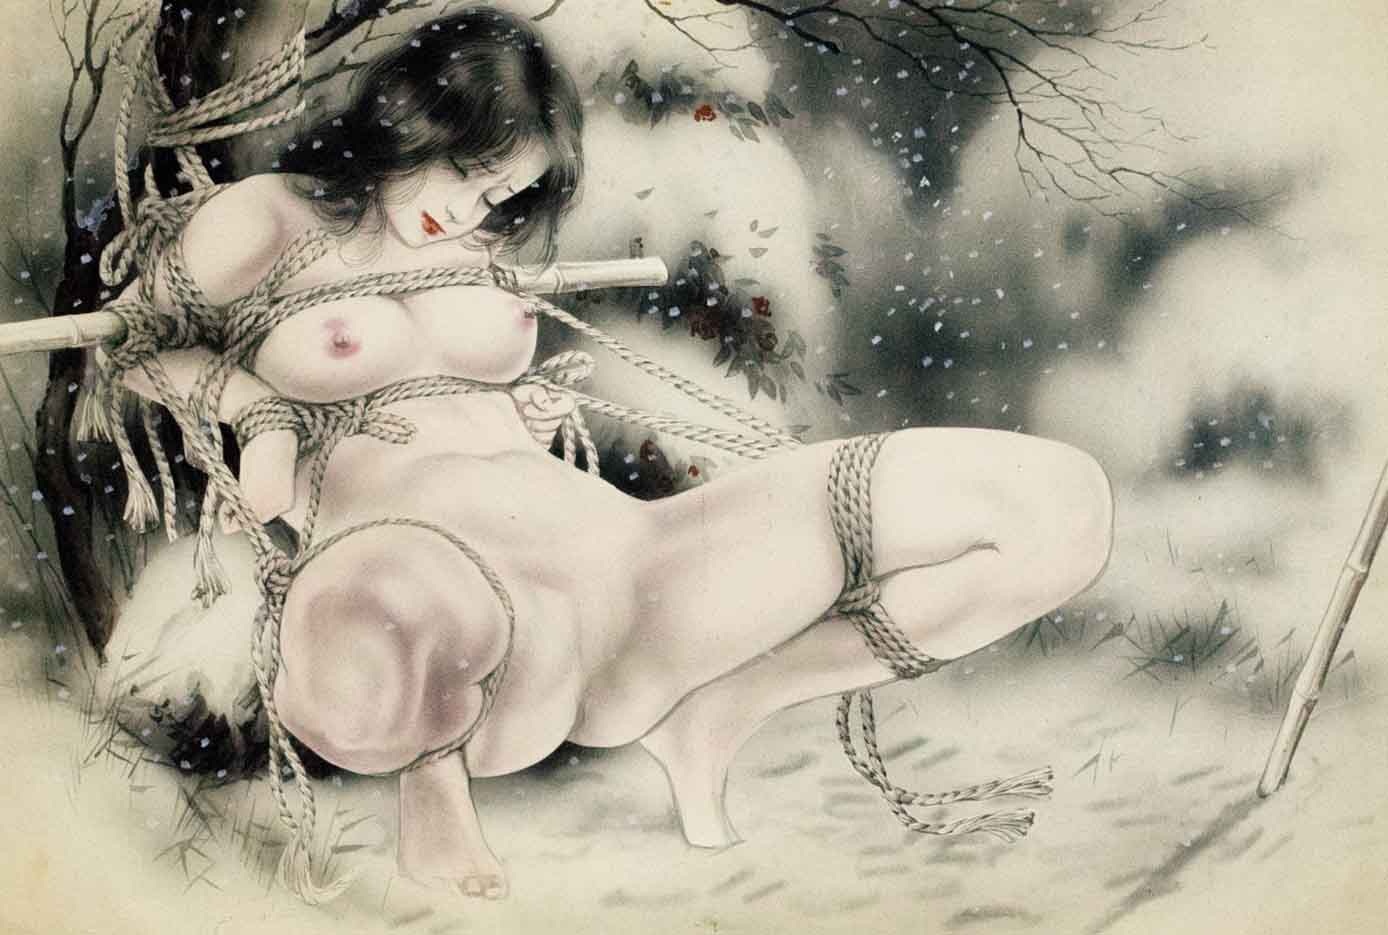 Рисованные голые девушки востока - фото порно devkis